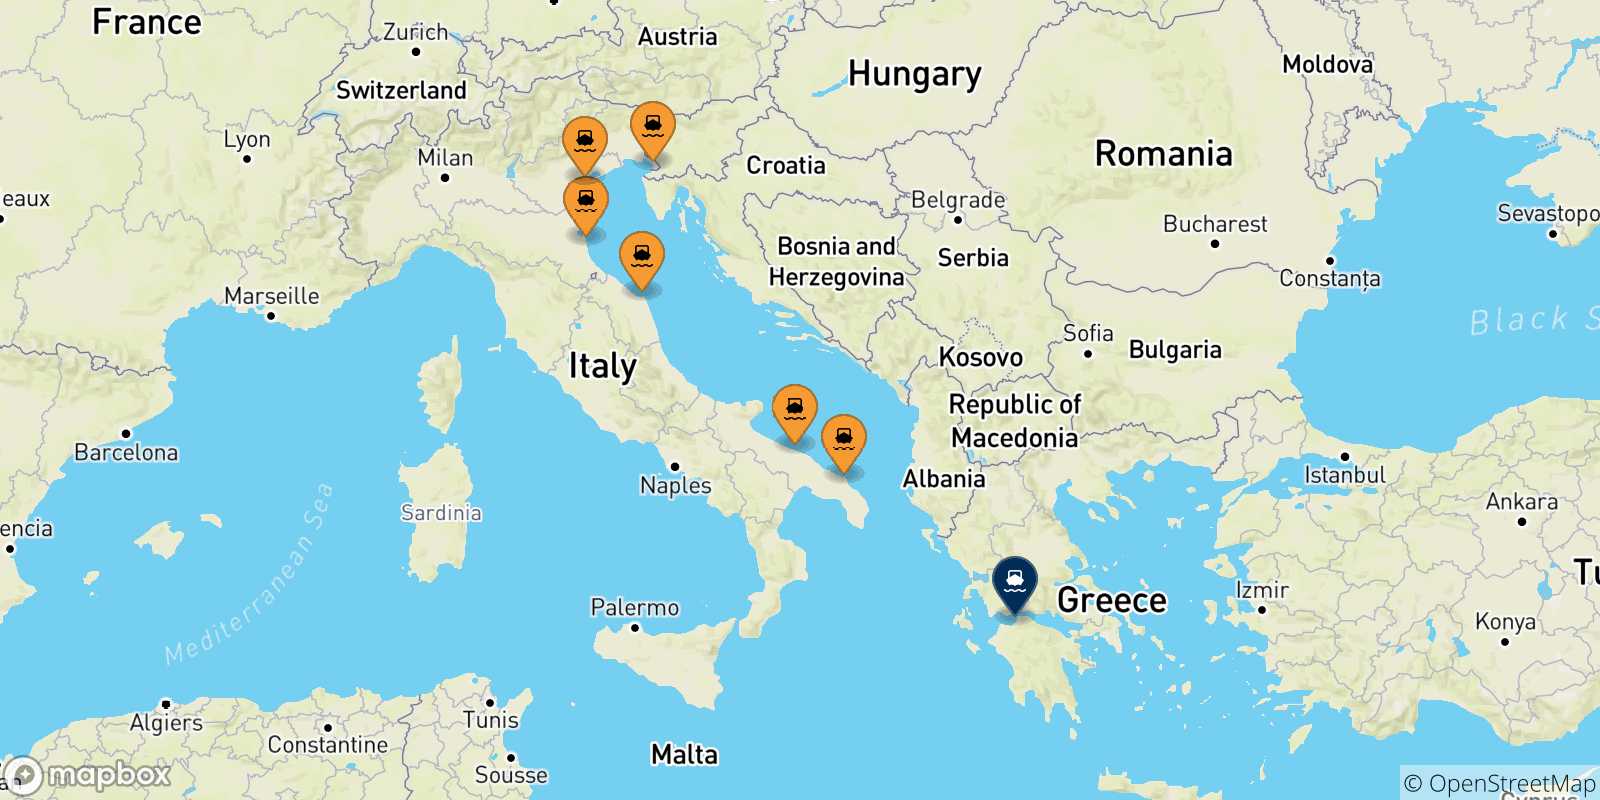 Mappa delle possibili rotte tra l'Italia e Patrasso